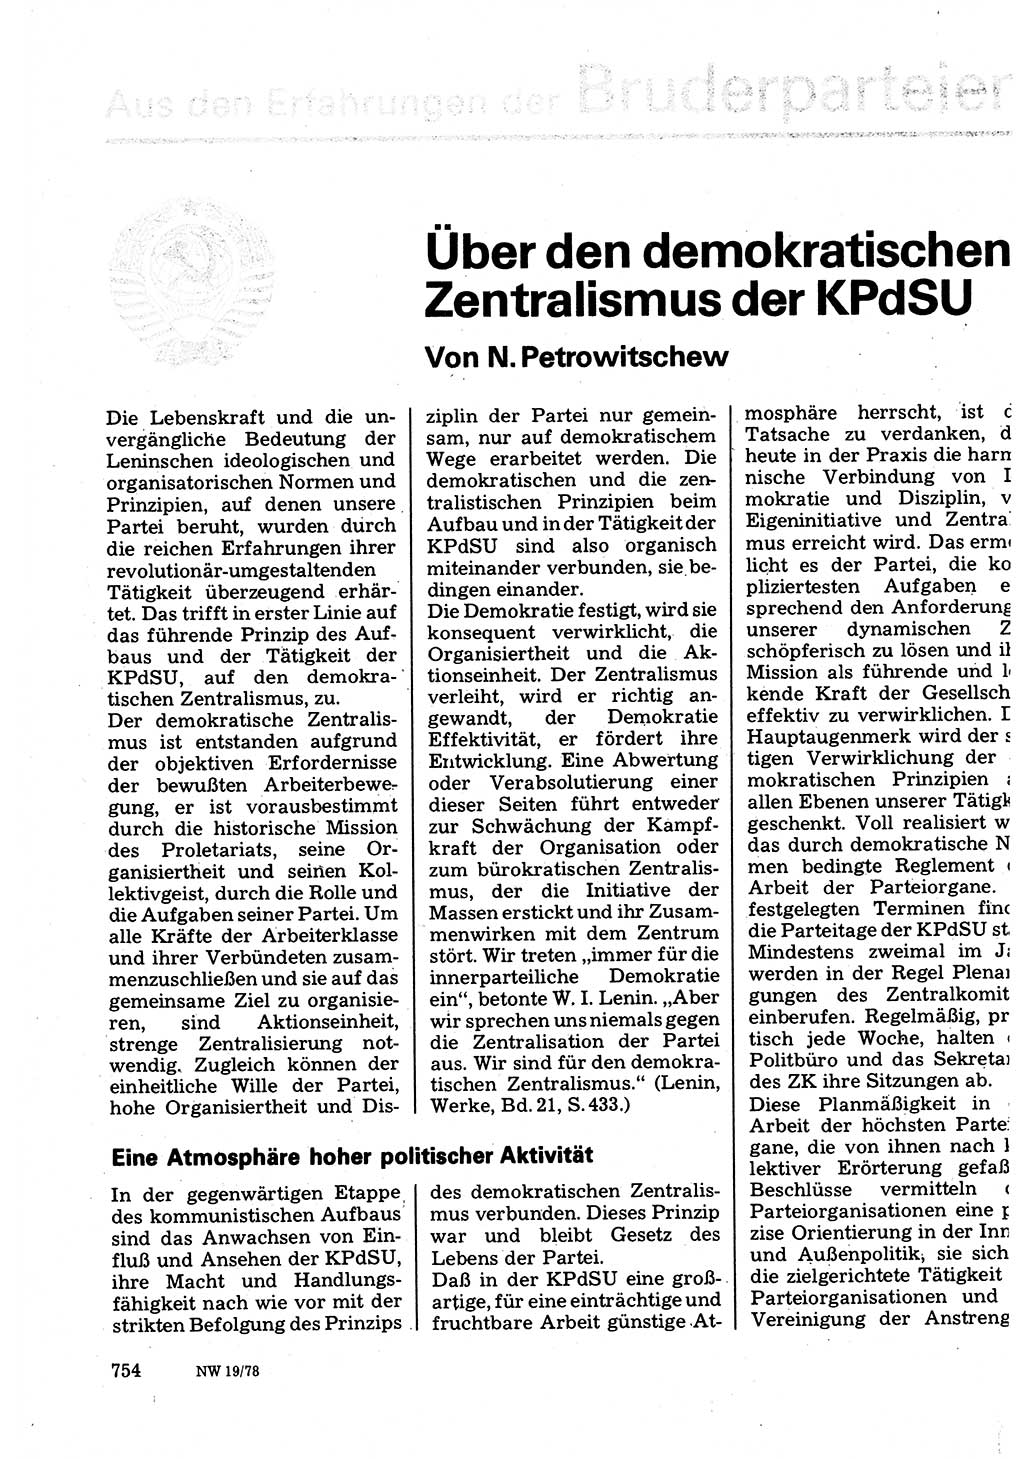 Neuer Weg (NW), Organ des Zentralkomitees (ZK) der SED (Sozialistische Einheitspartei Deutschlands) für Fragen des Parteilebens, 33. Jahrgang [Deutsche Demokratische Republik (DDR)] 1978, Seite 754 (NW ZK SED DDR 1978, S. 754)